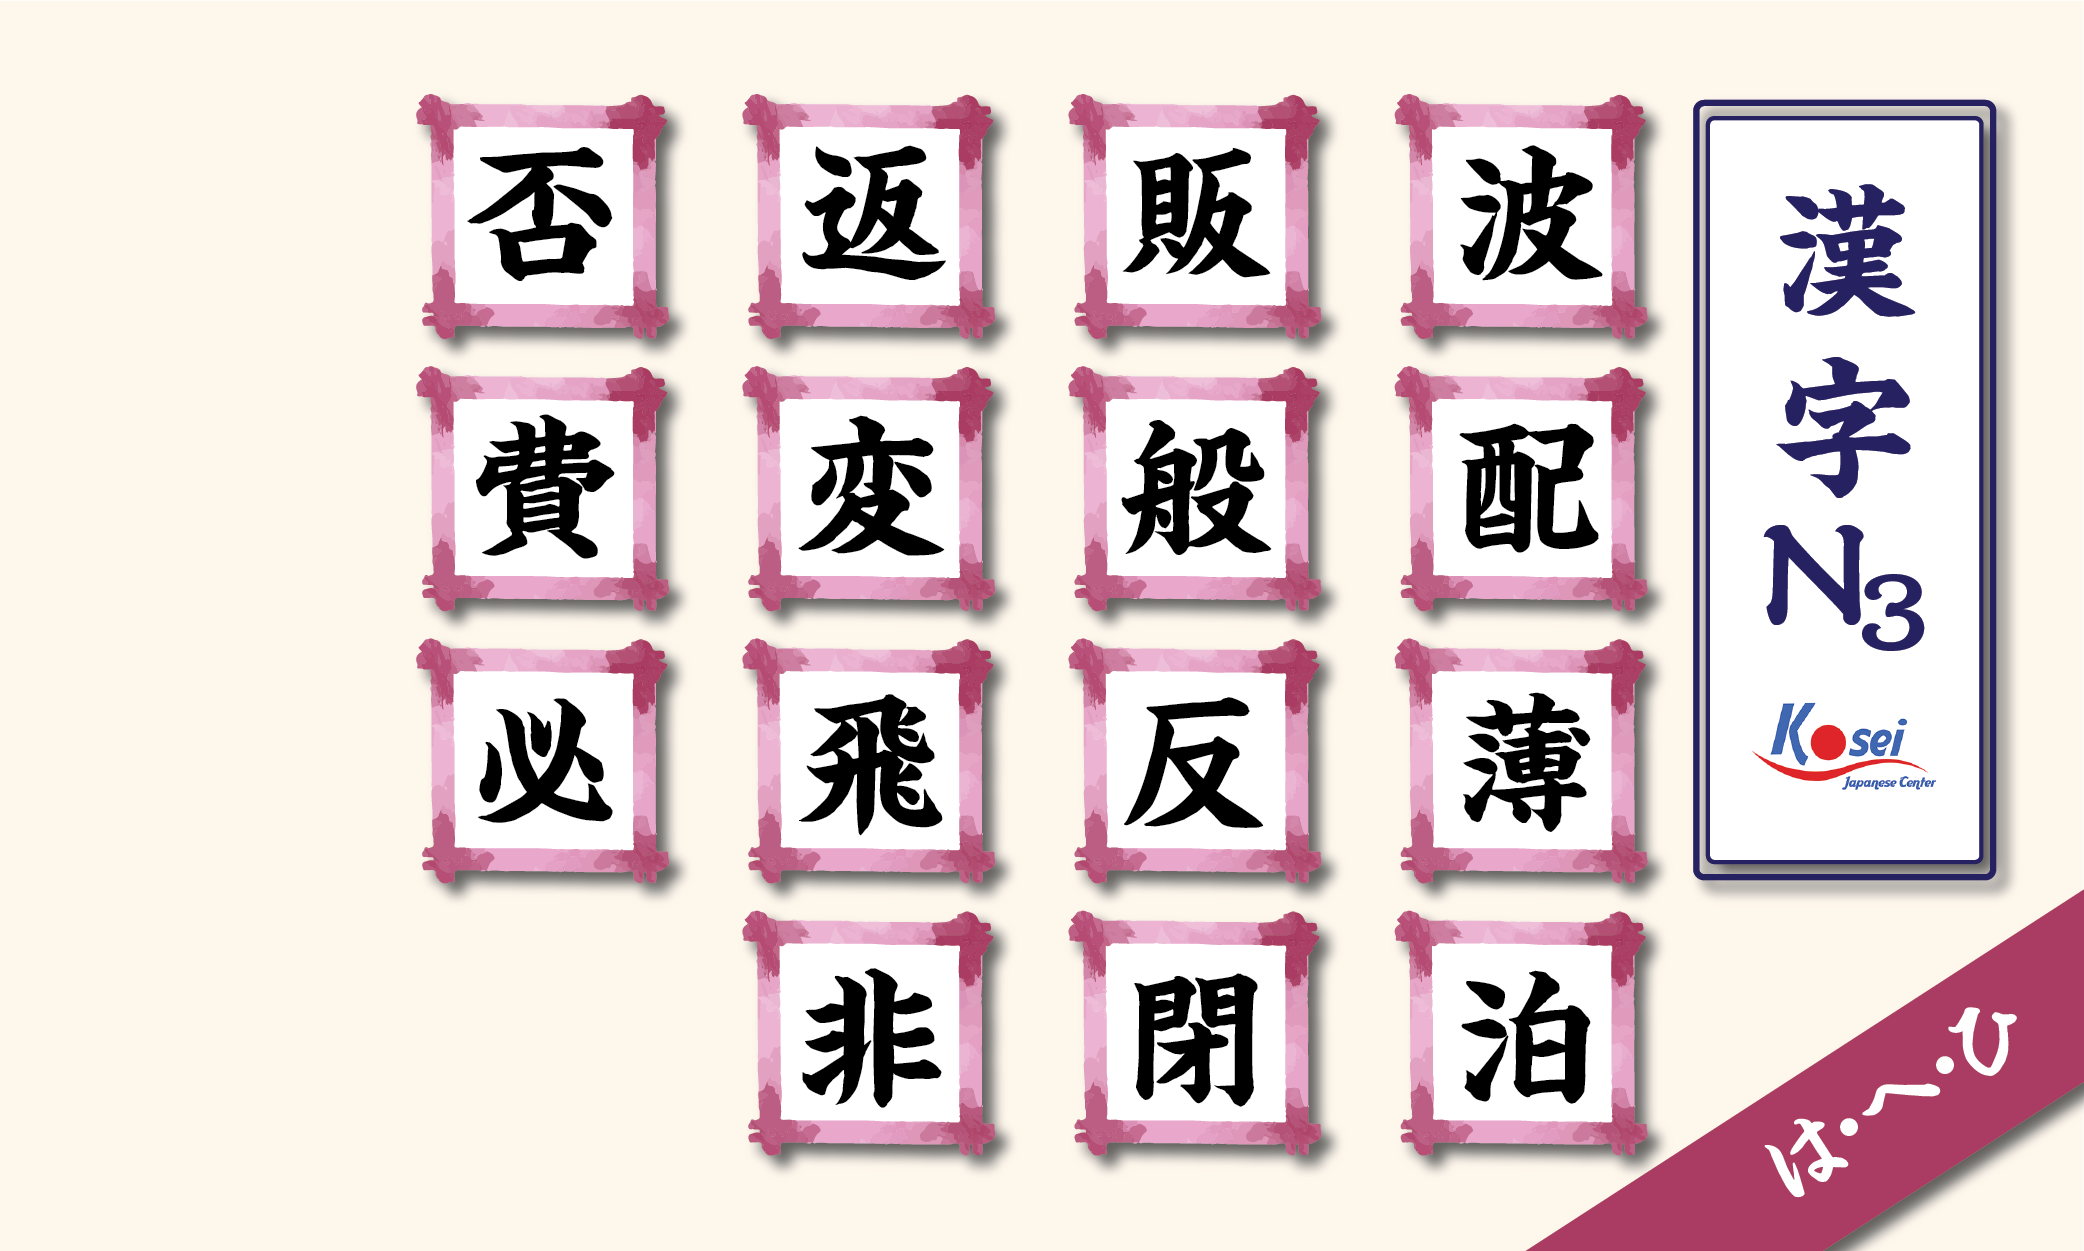 kanji n3 theo âm on hàng h